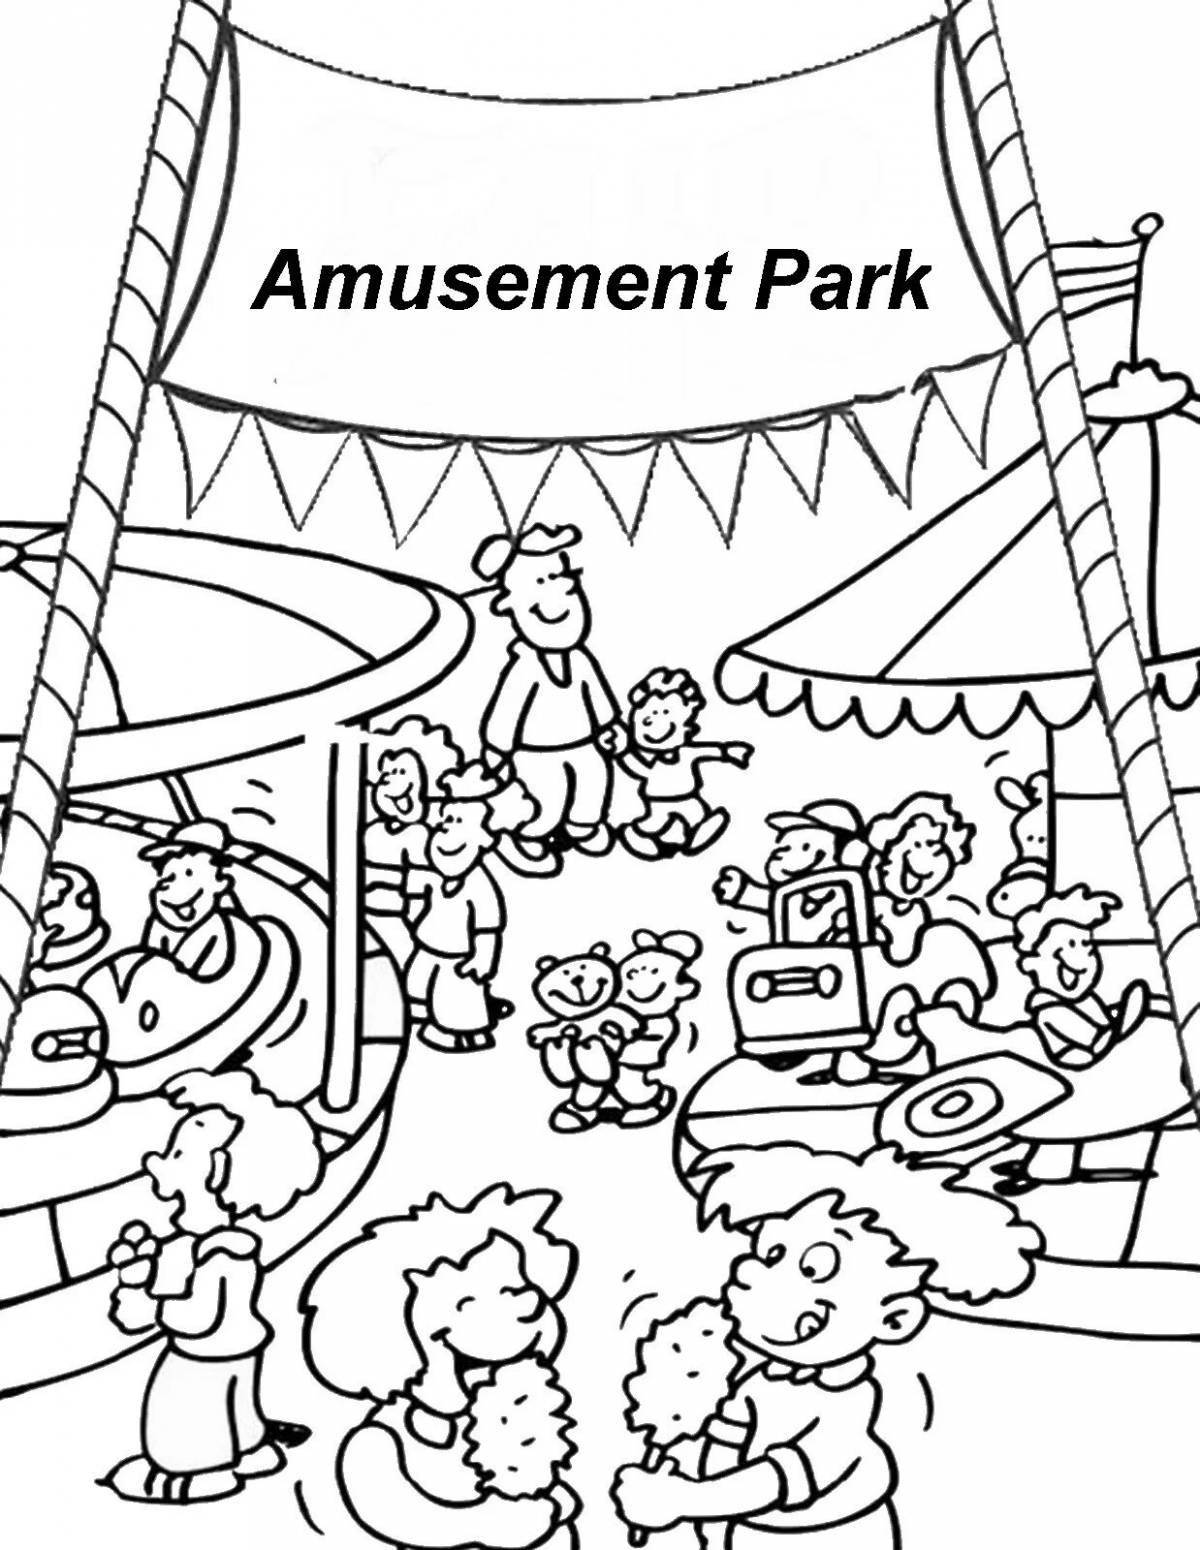 Magic amusement park coloring page